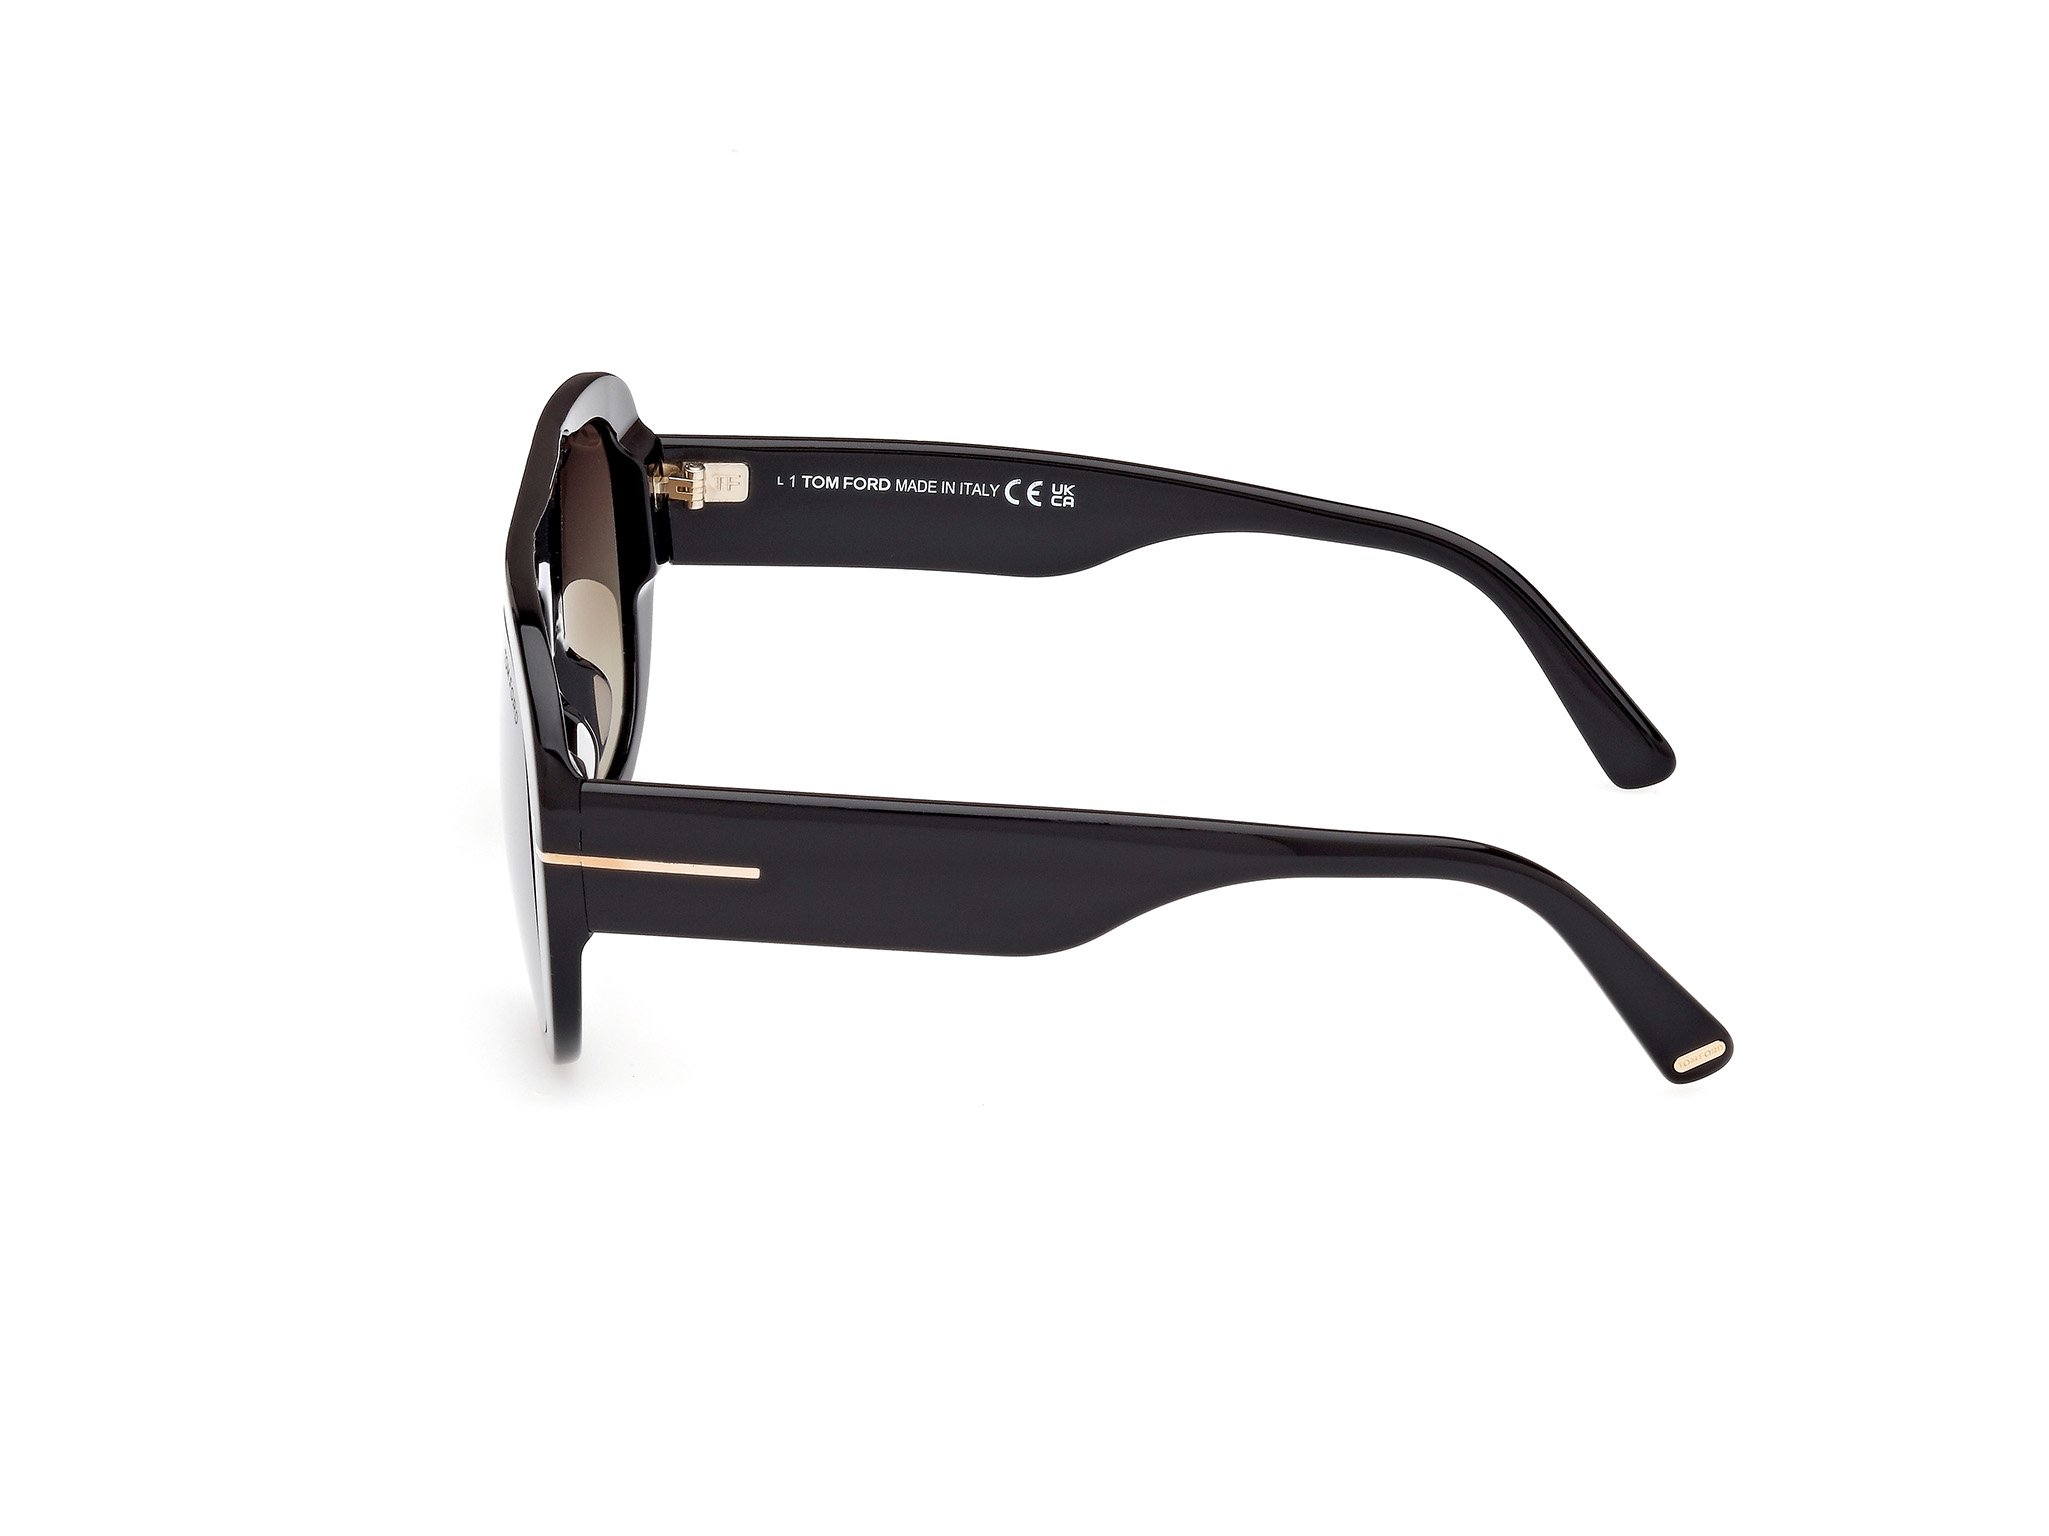 Tom Ford Sonnenbrille für Herren CECIL FT1078 01G schwarz